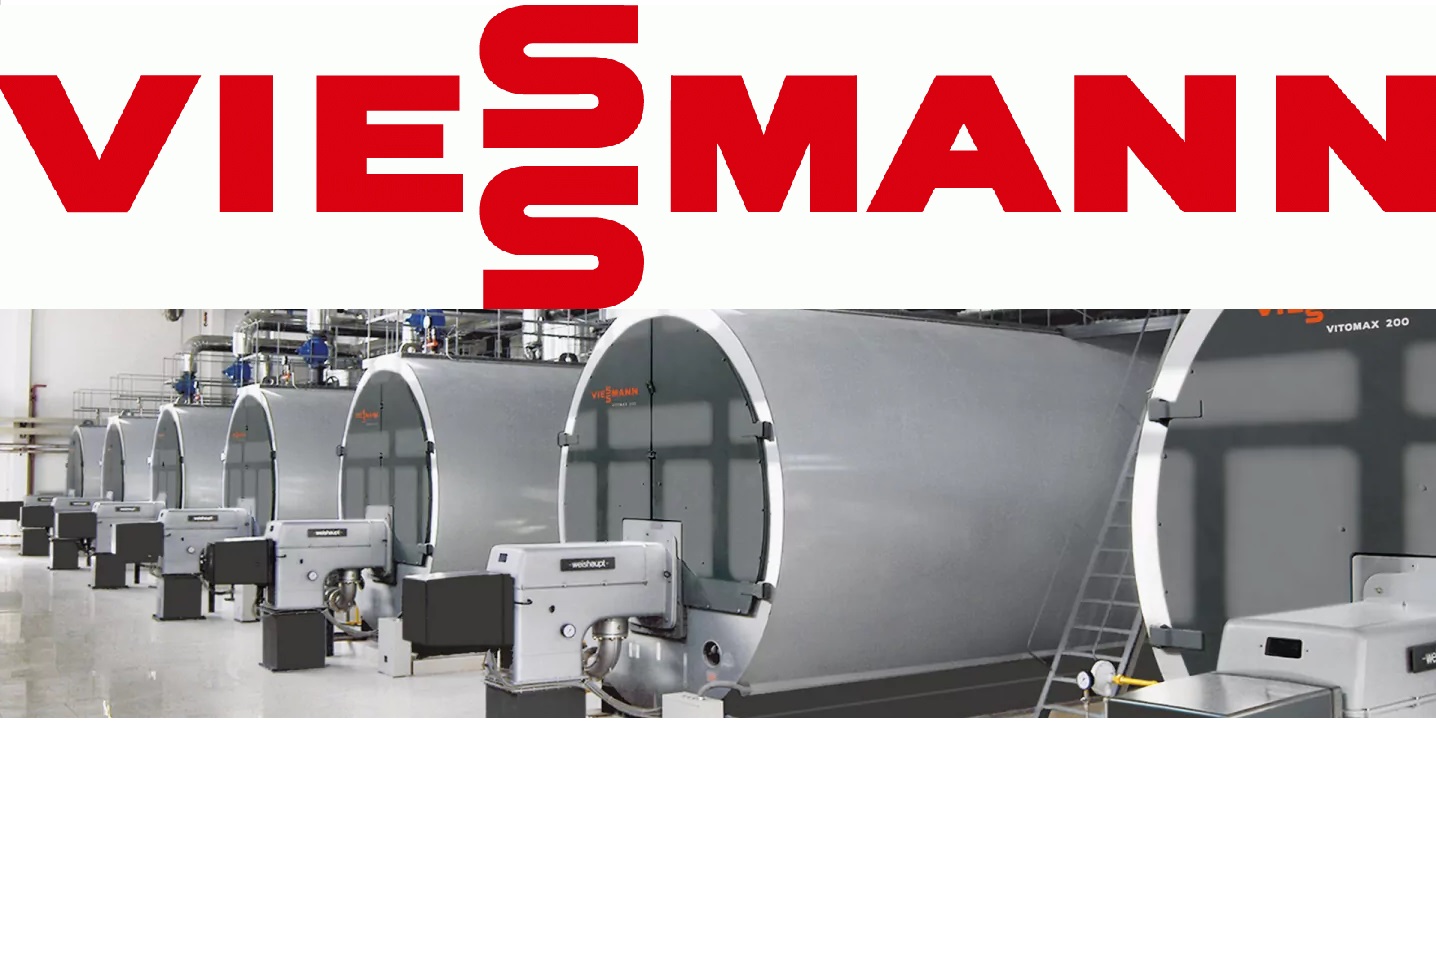 Viessmann-Cazane industriale Viessman